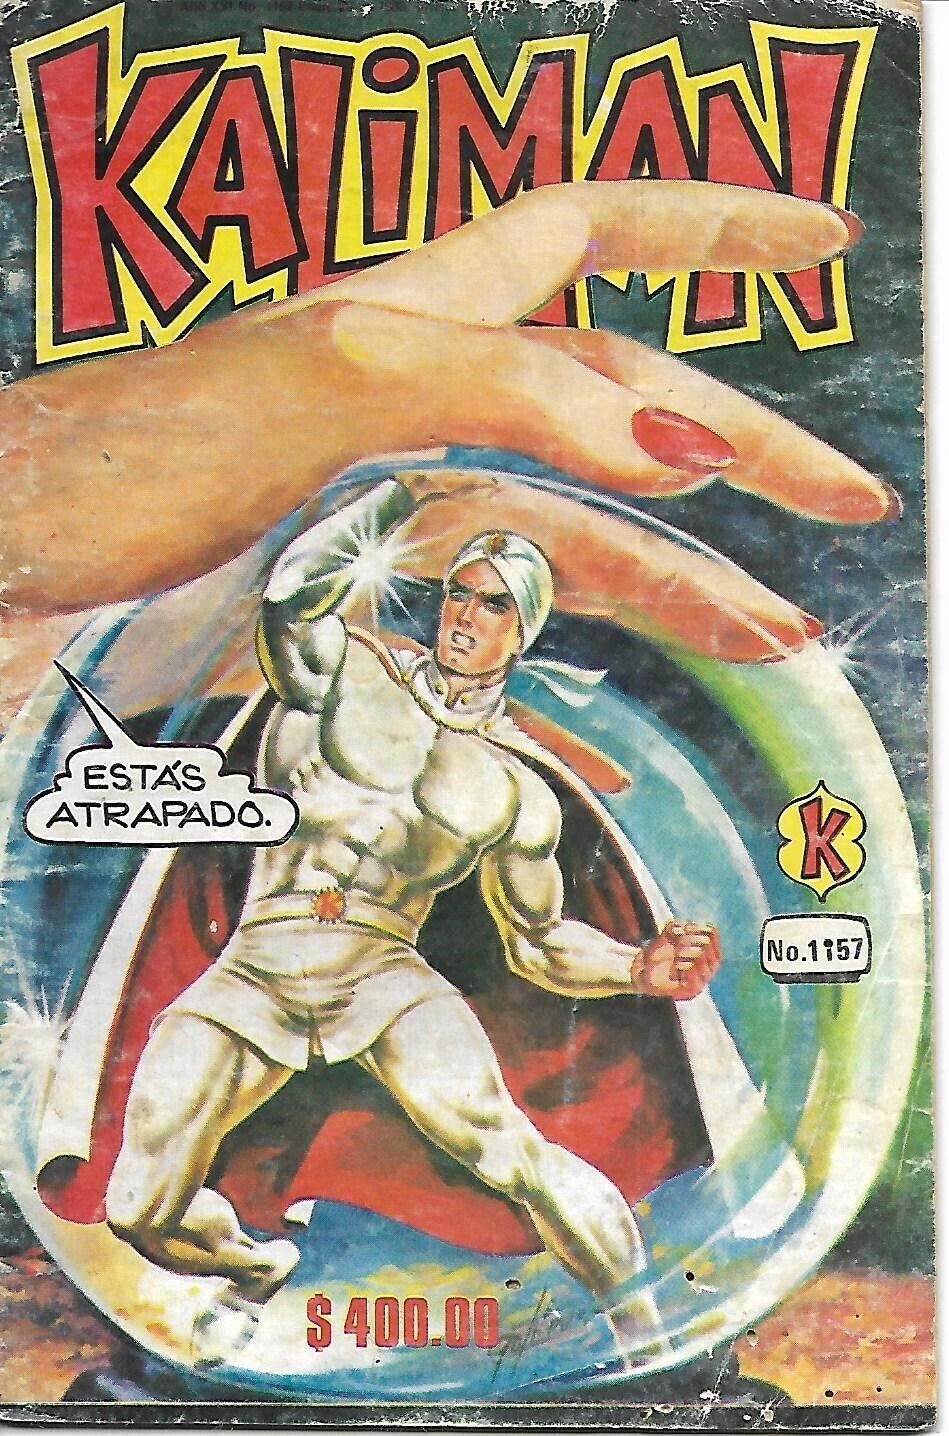 Kaliman El Hombre Increible #1157 - Enero 29, 1988 - Mexico